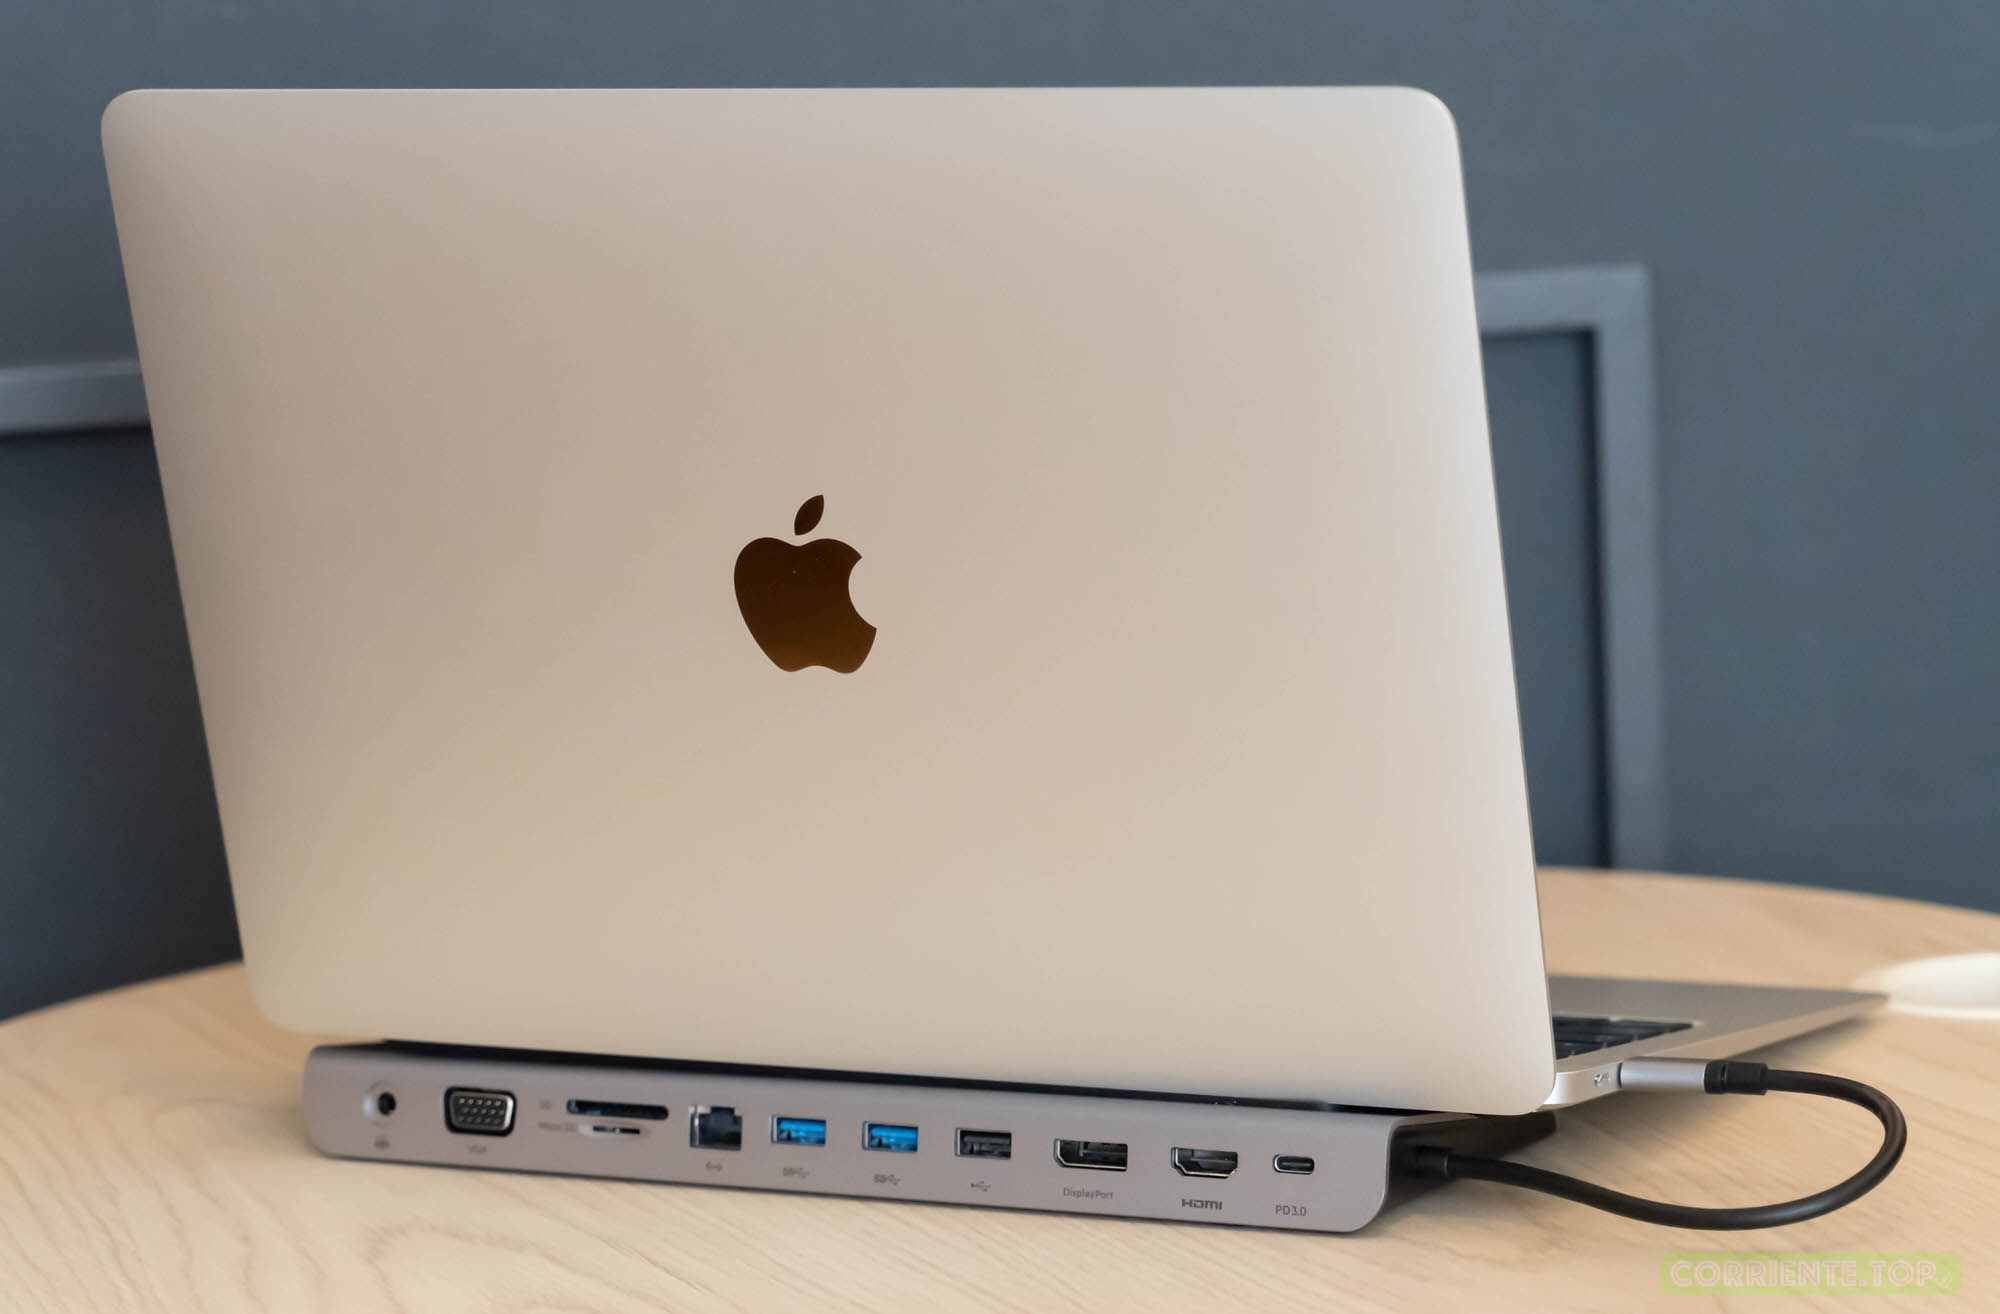 USB-C 11-in-1 Multiport Dock MacBook